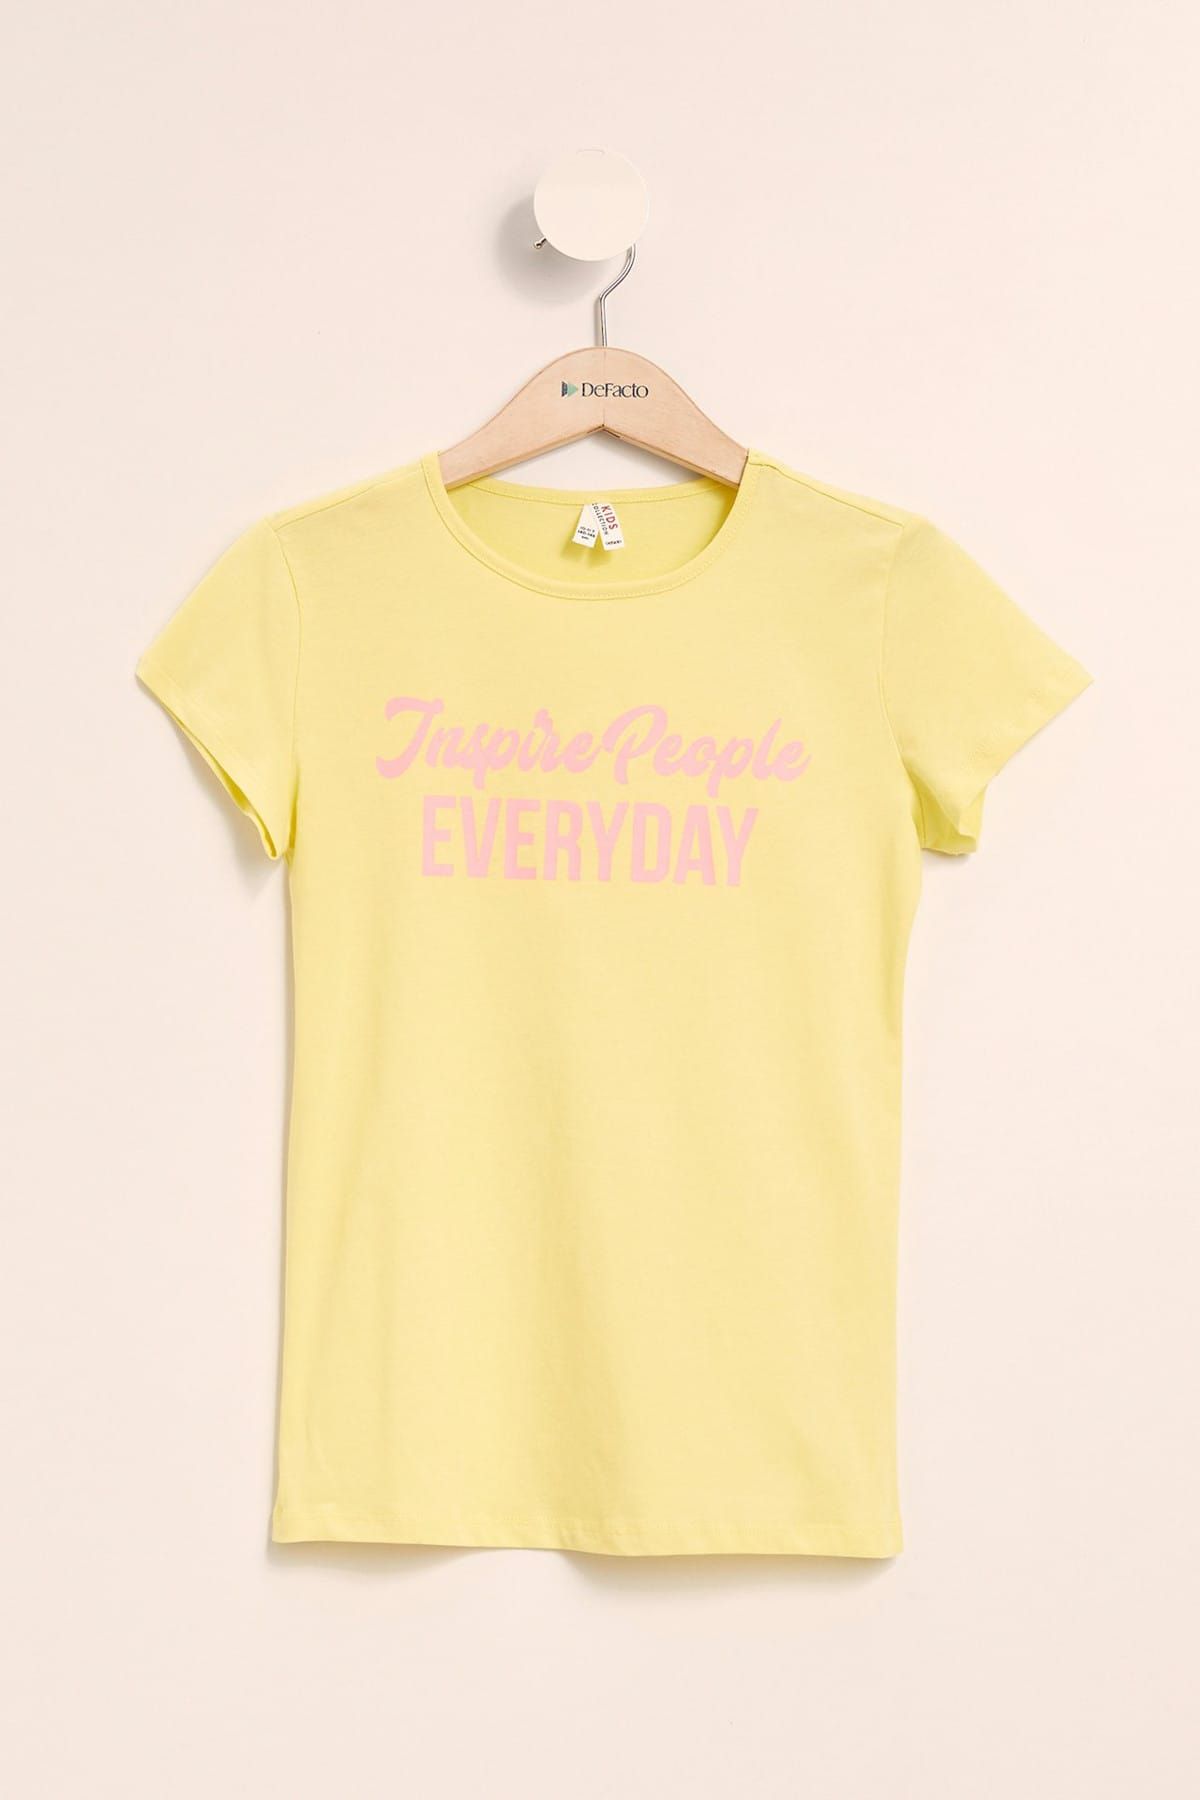 Defacto Sarı Kız Çocuk Baskılı Kısa Kollu T-Shirt